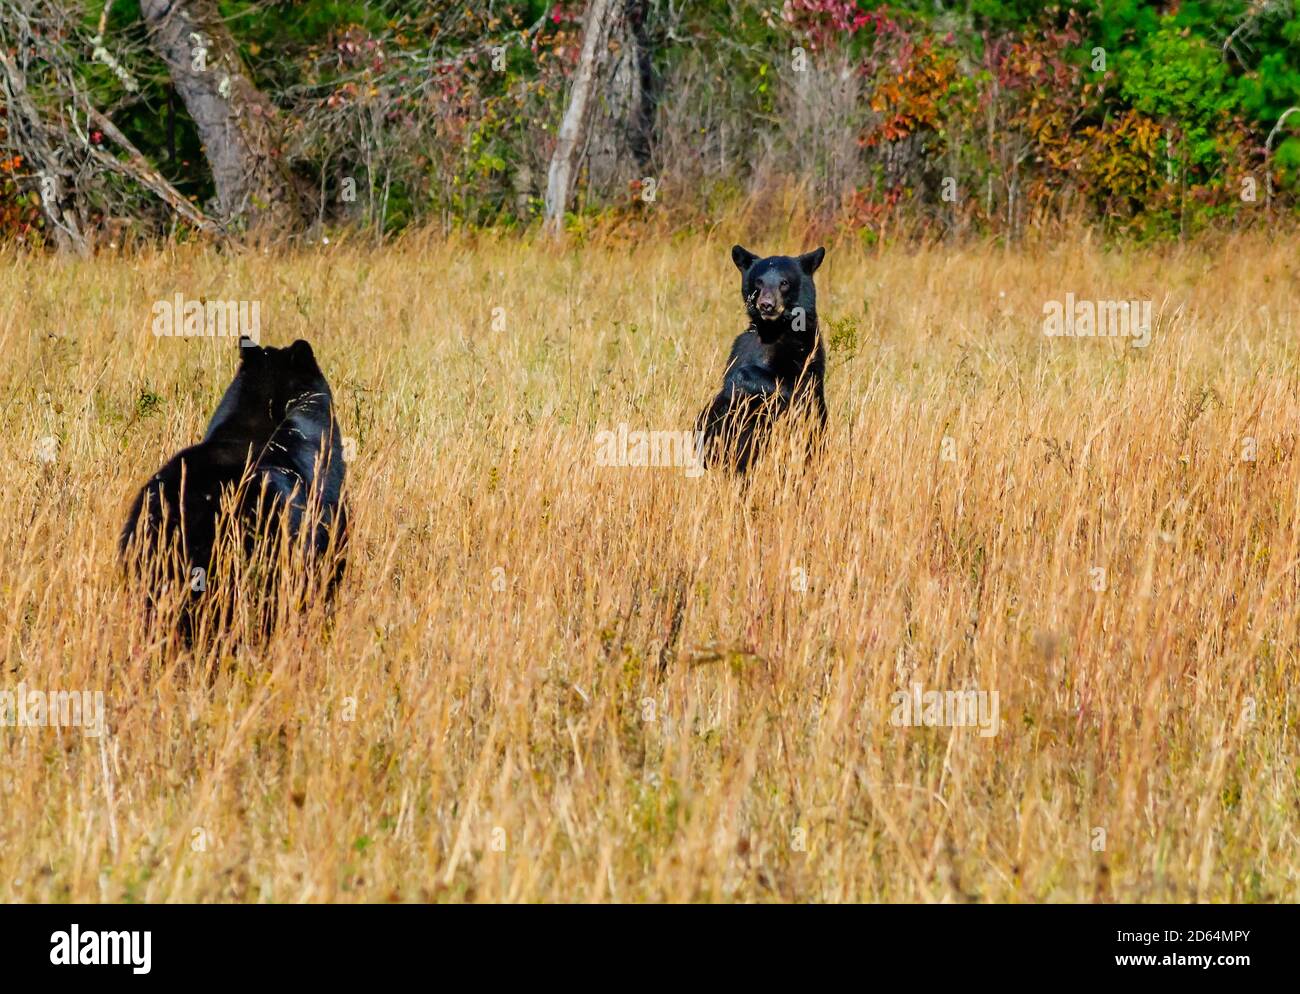 Une femelle d'ours noir retourne à son cub en attente à Cades Cove, dans le parc national des Great Smoky Mountains, dans le Tennessee. Banque D'Images